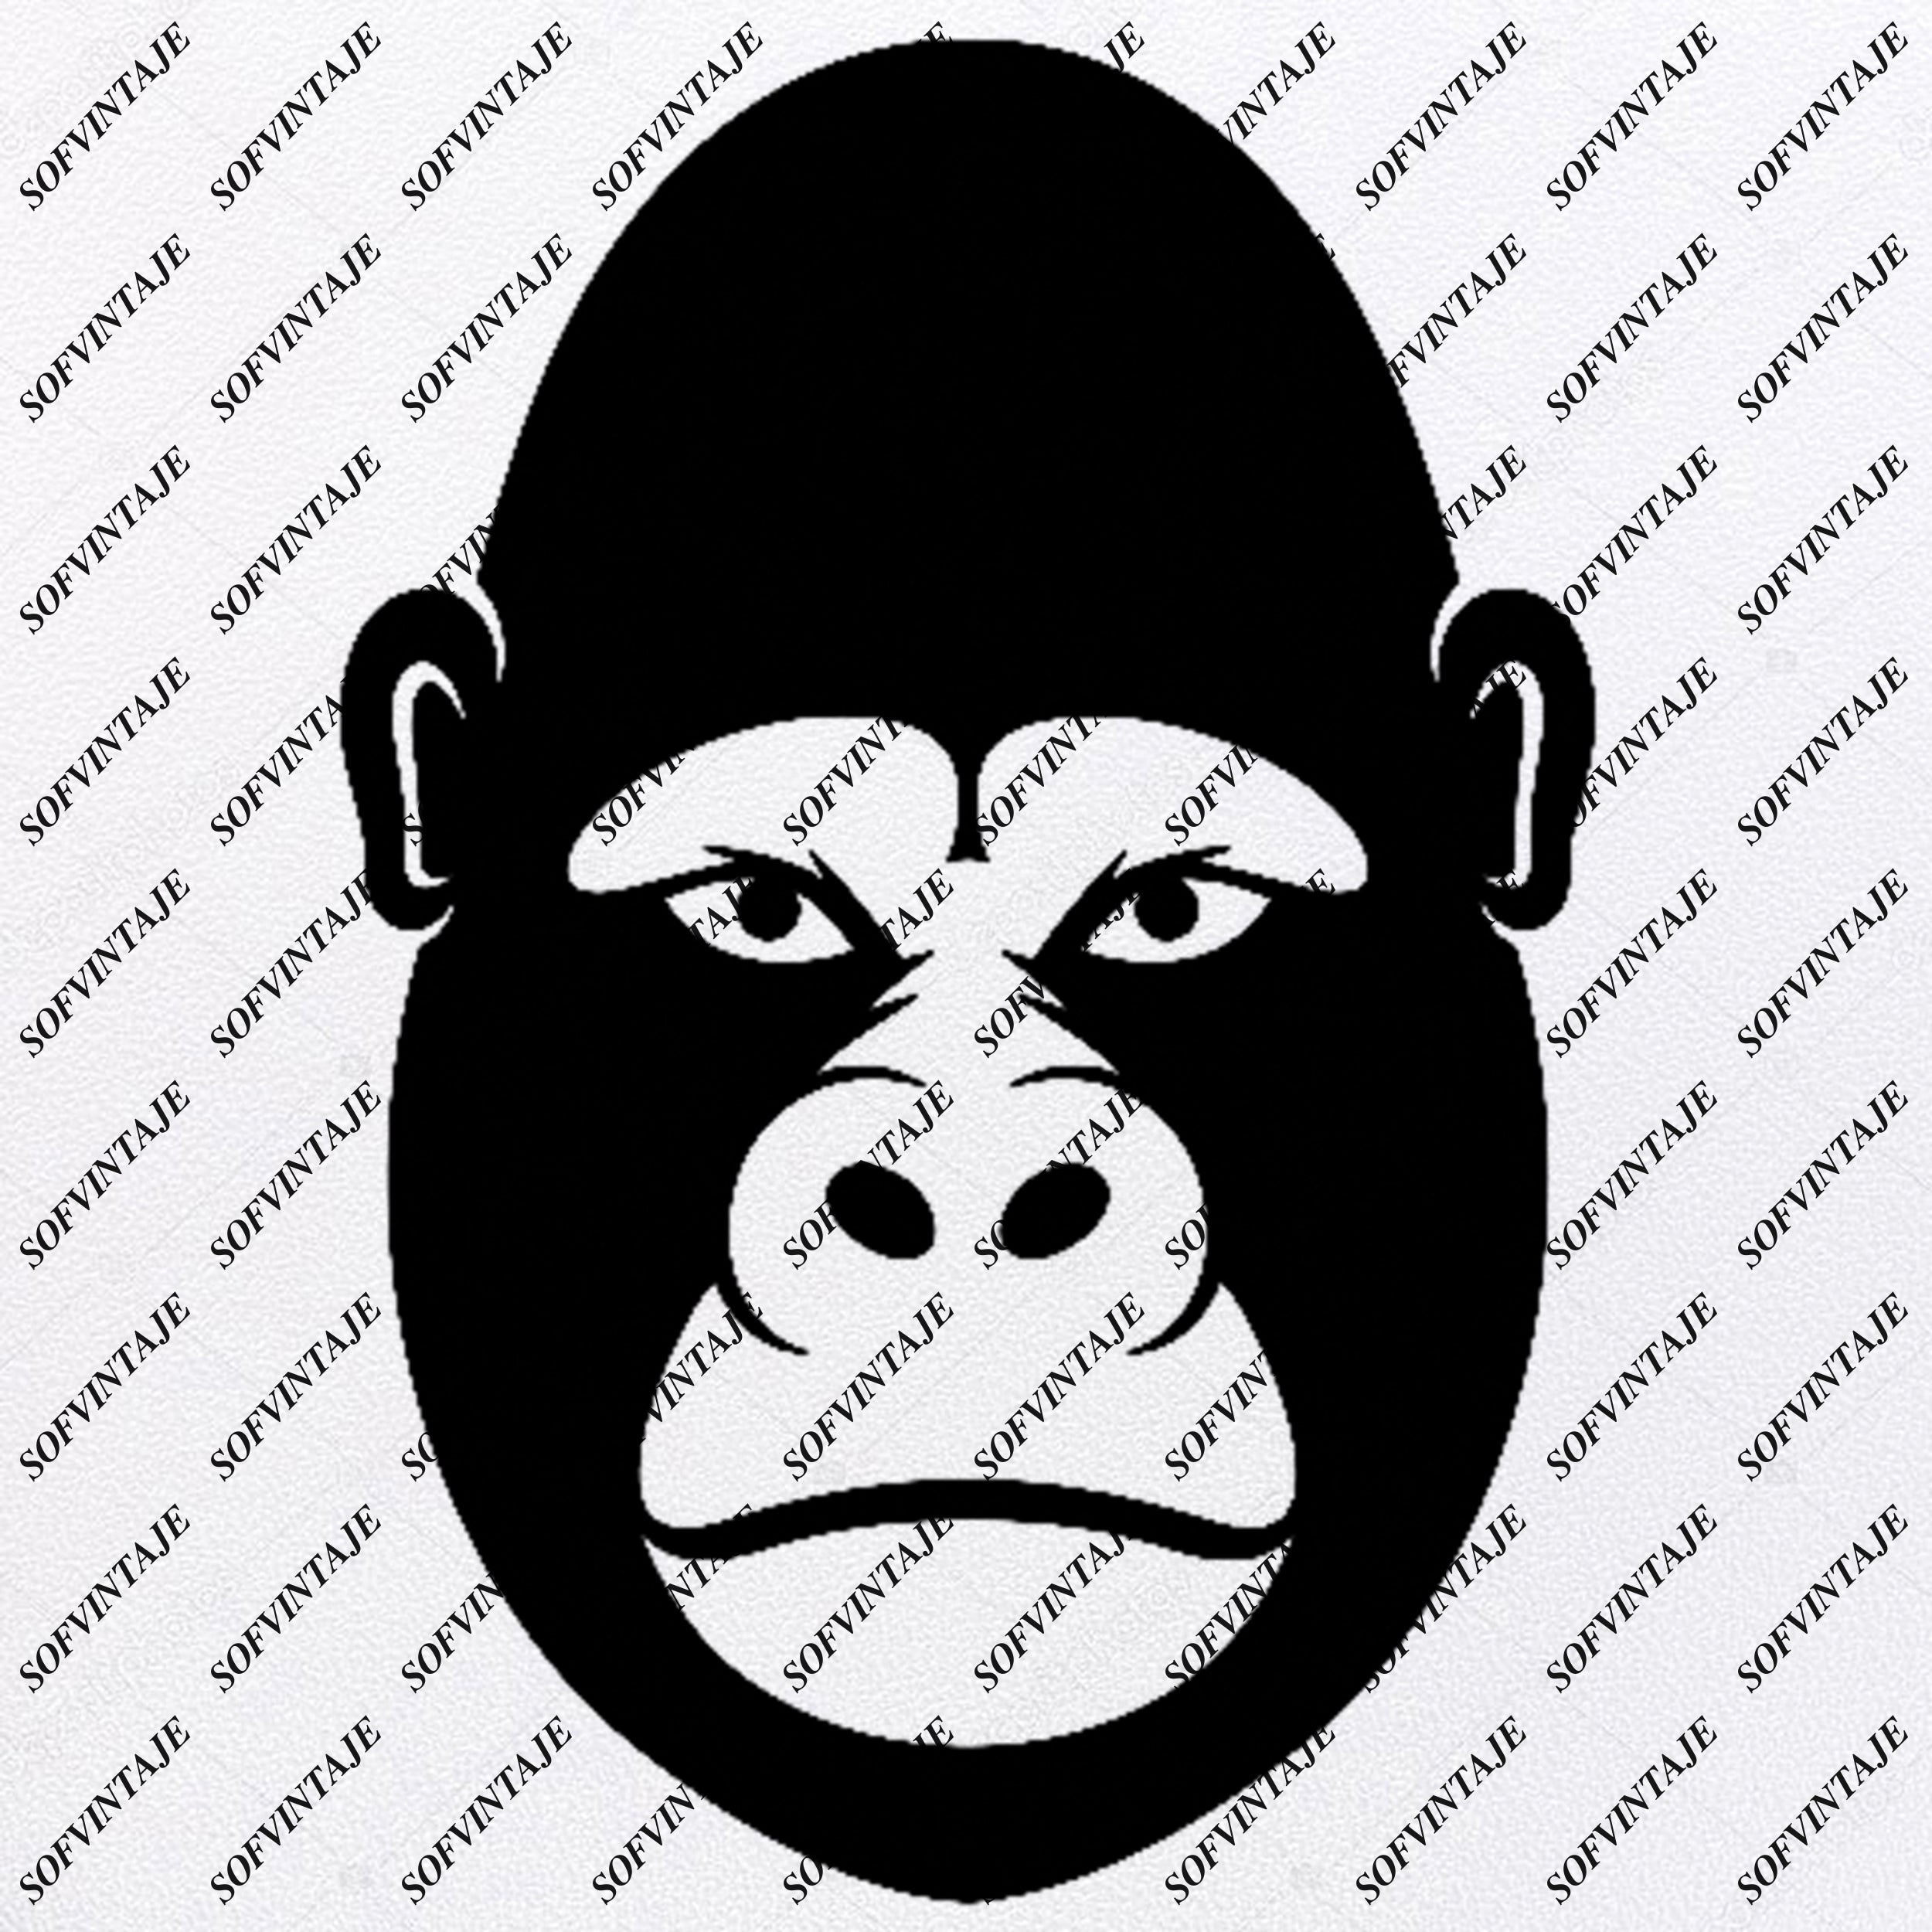 Download Digital Download Svgpngpdfdxfeps Jungle Animal Gorilla Clip Art Gorilla Strong Svg Gorilla Ape Monkey Svg Apes Together Strong Svg Digital Prints Prints Tripod Ee